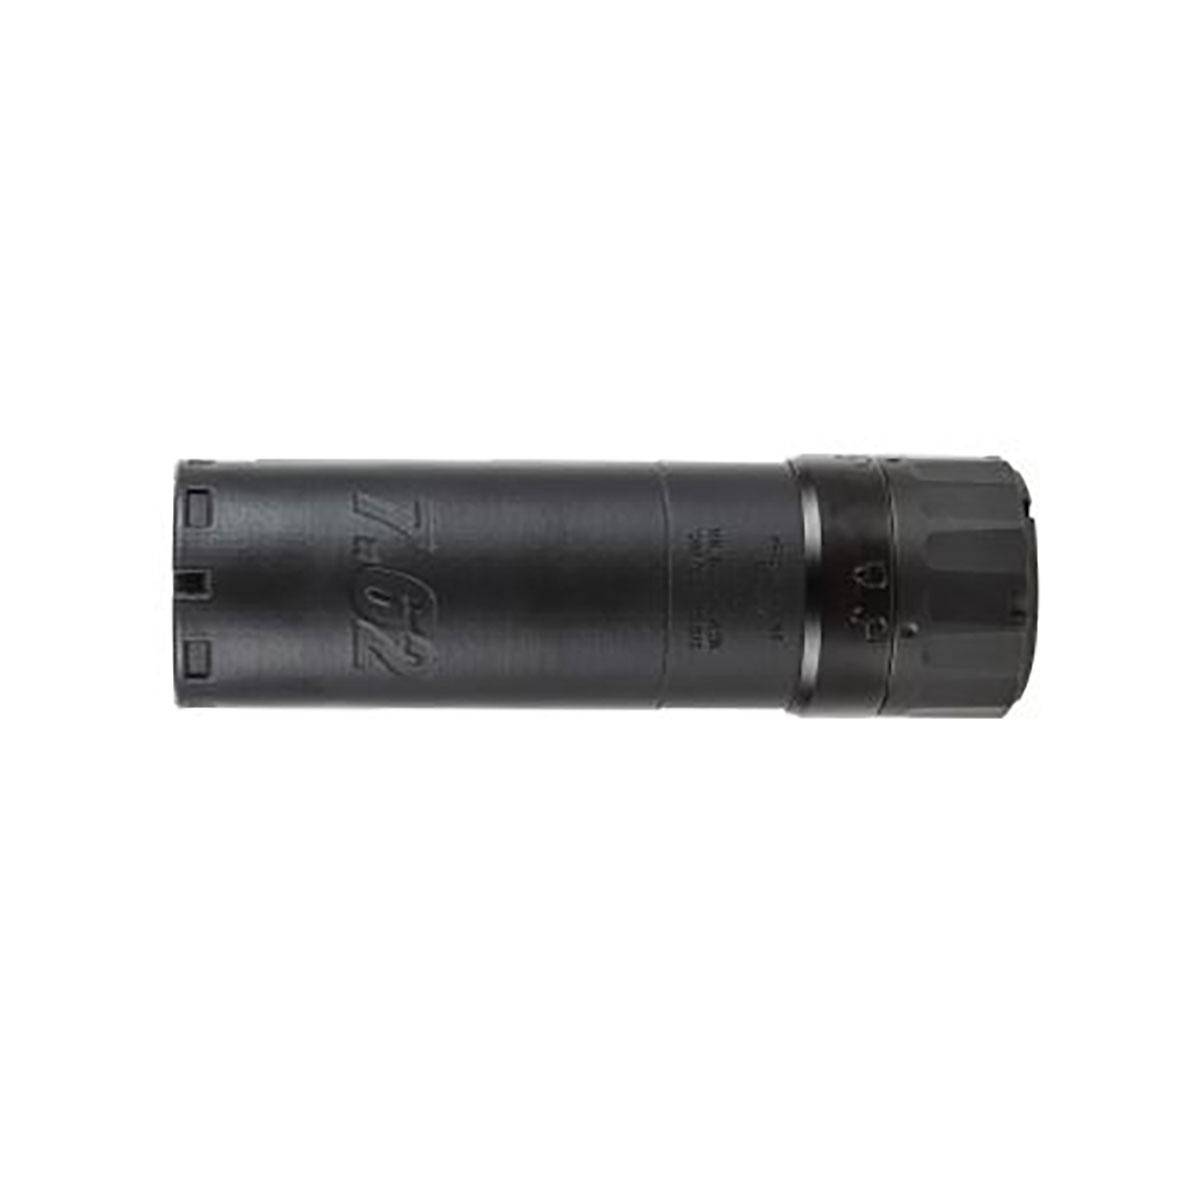 SIG SAUER, INC. - SLH762C-QD Compact Suppressor 7.62mm Inconel QD MNT Black